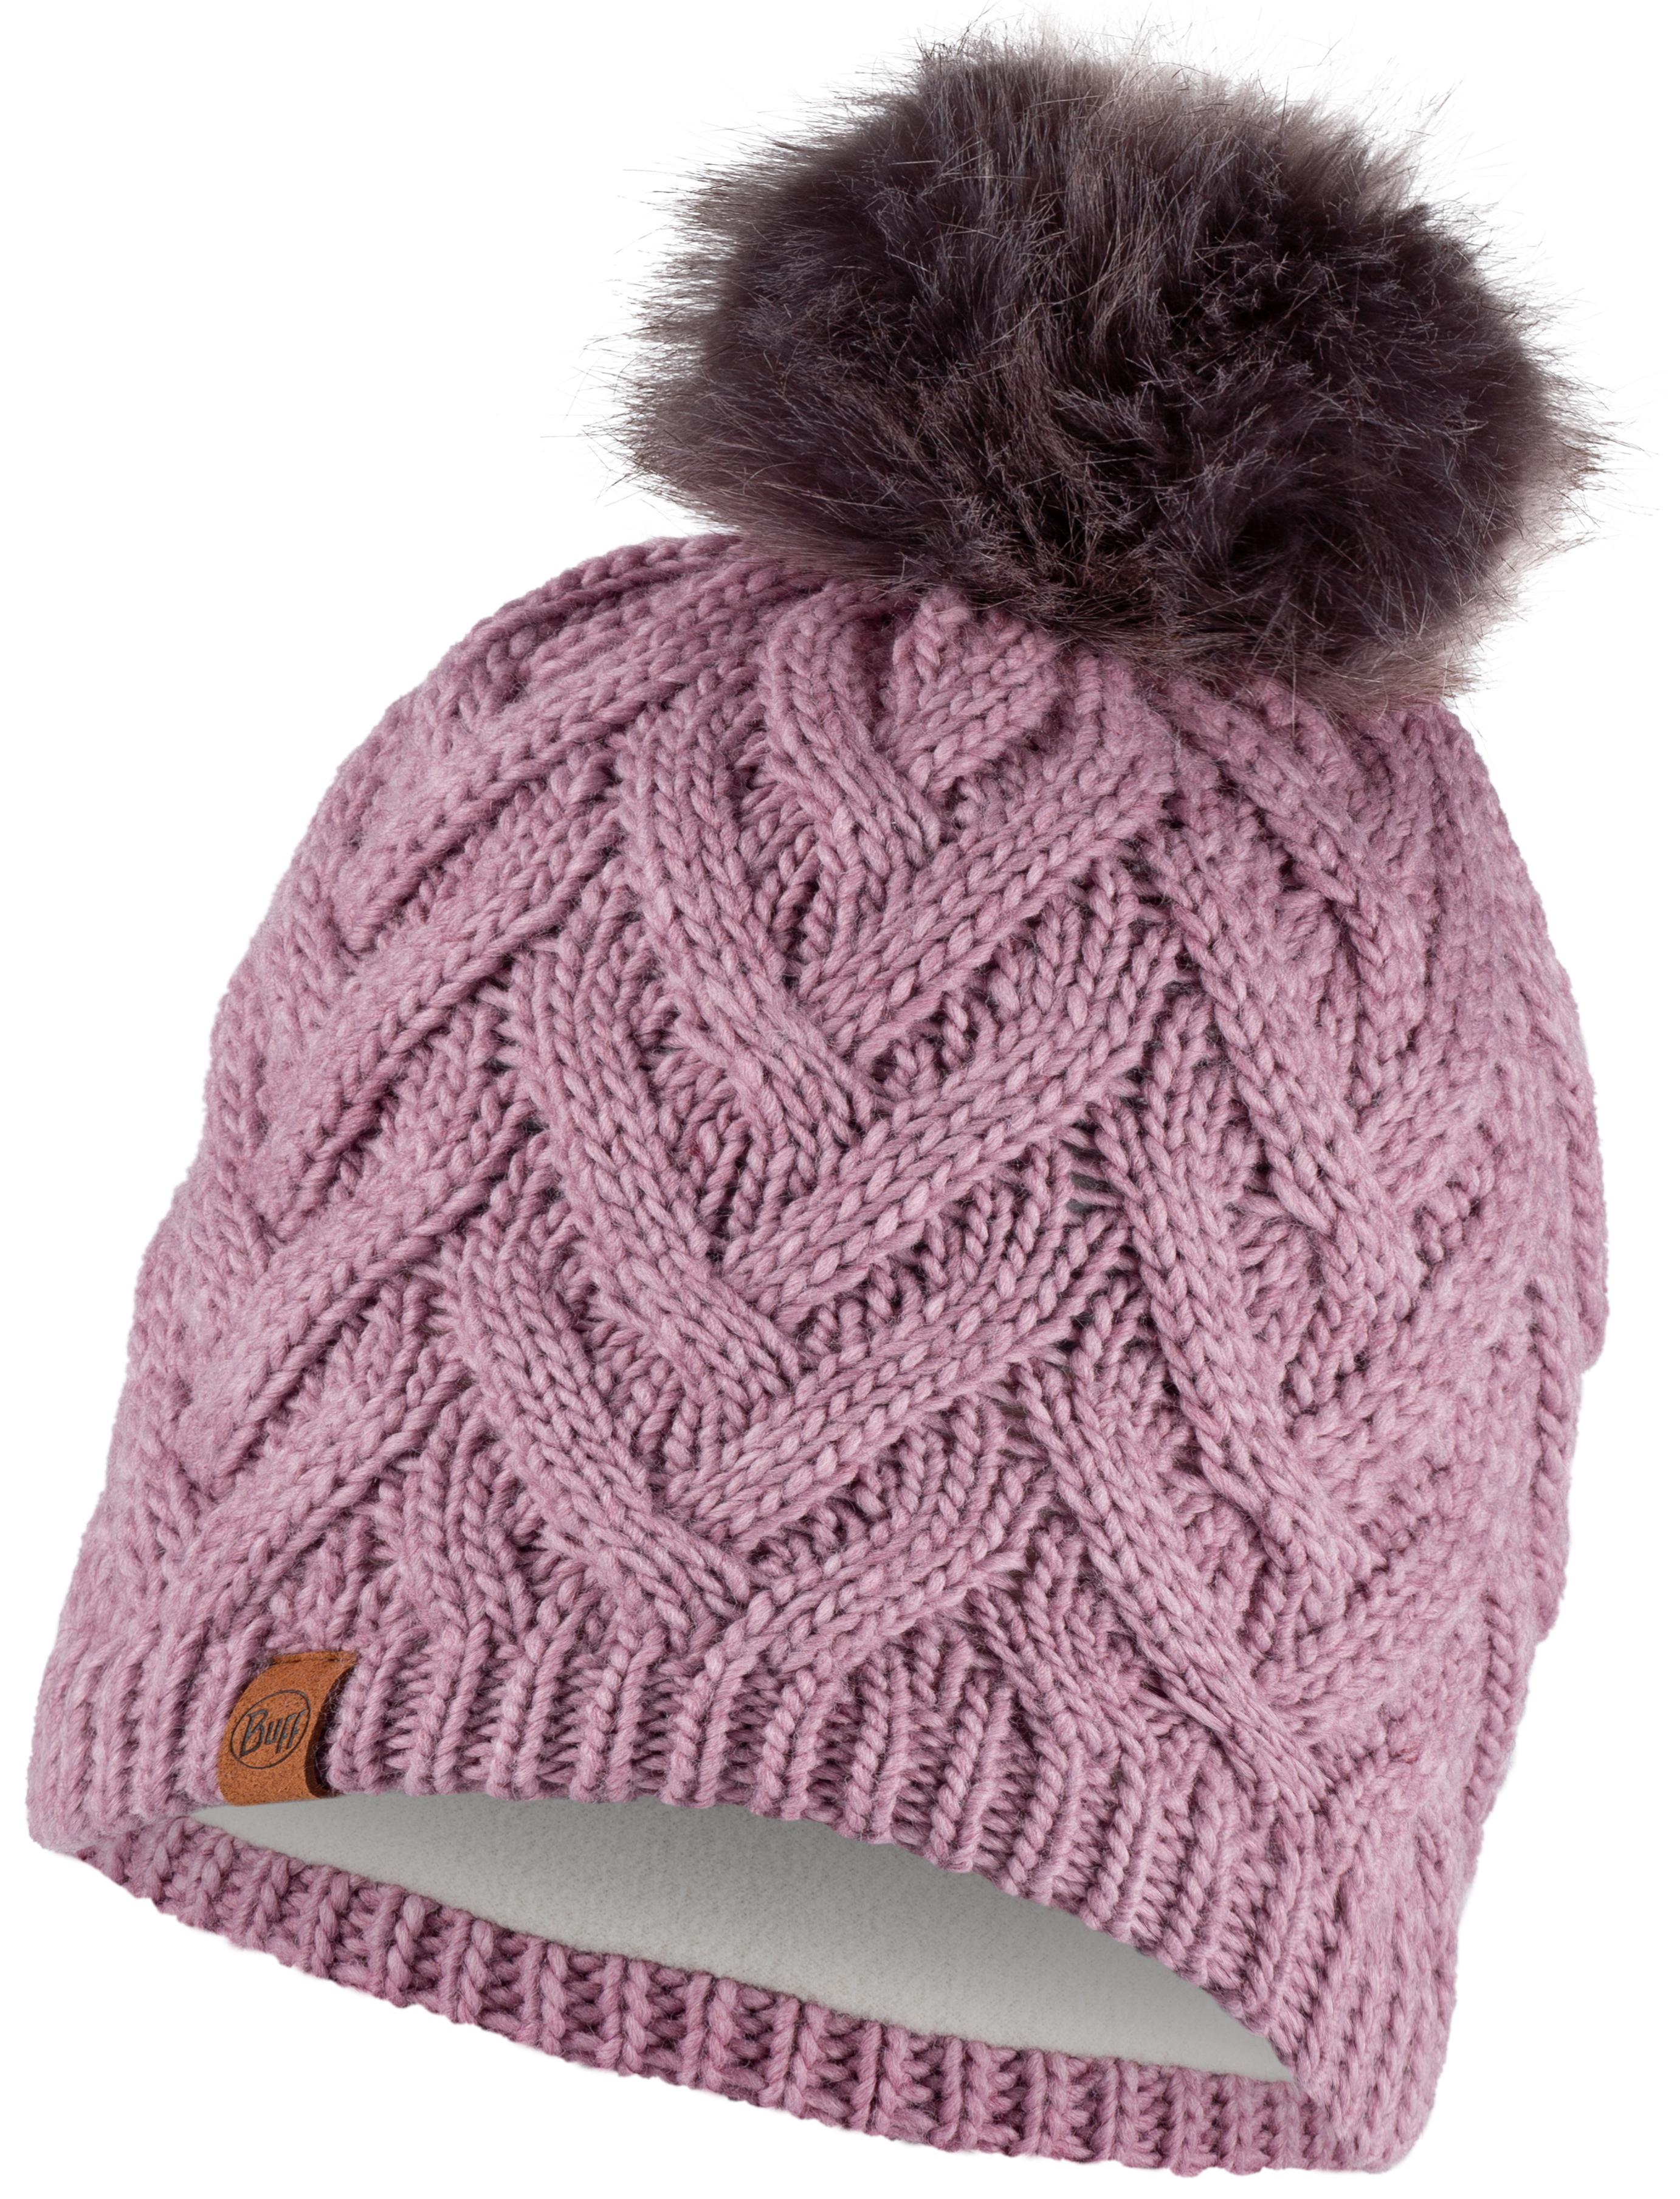 Шапка бини унисекс Buff Knitted & Fleece Band Hat Caryn розовая, one size